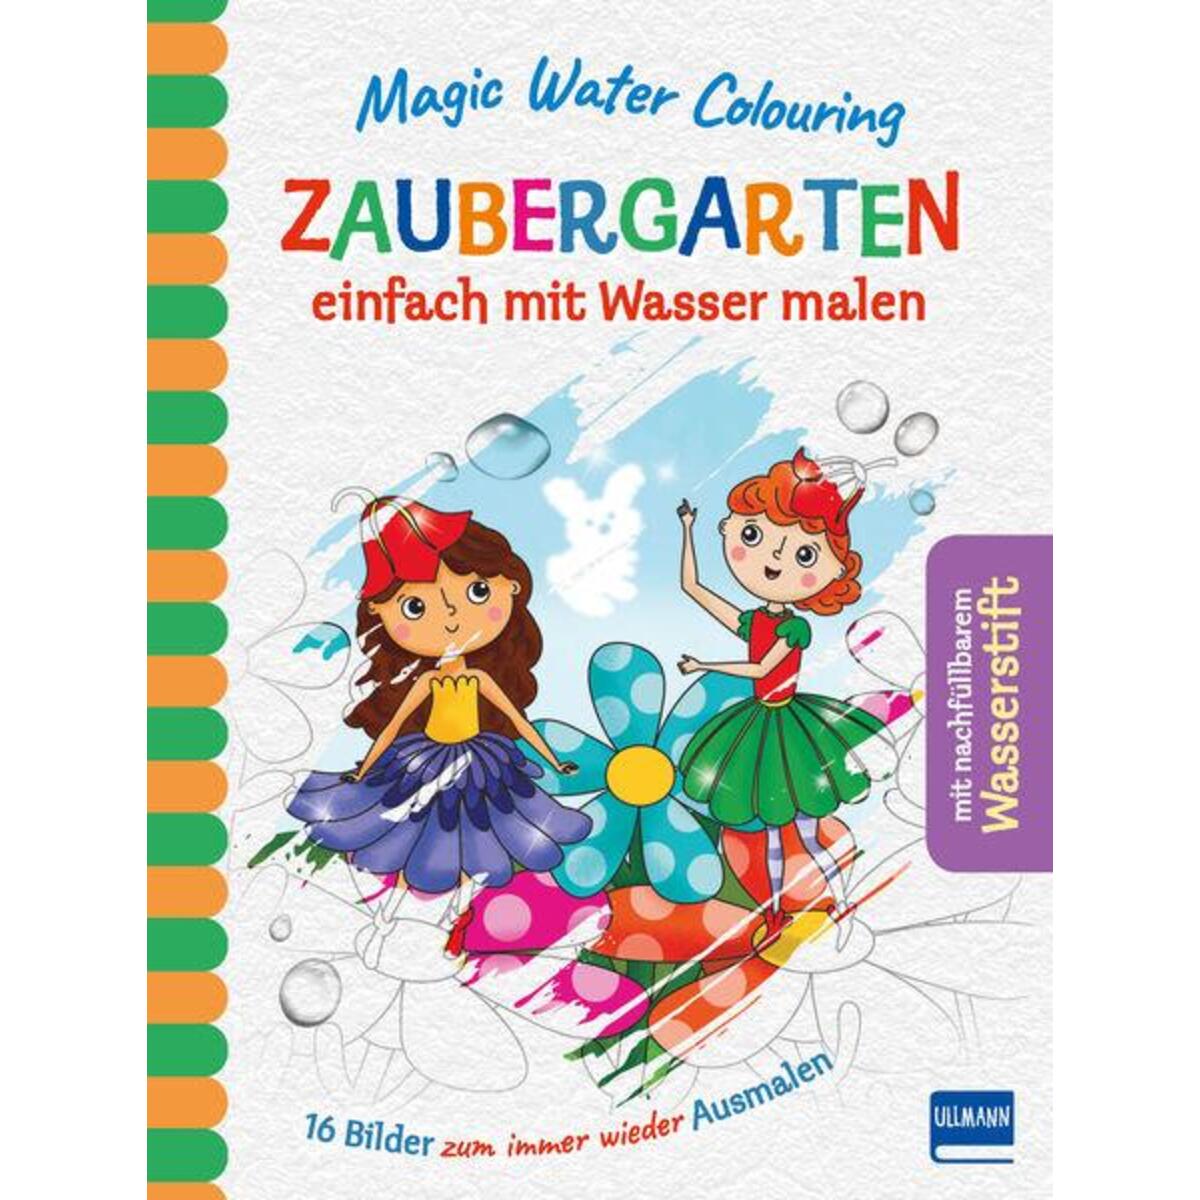 Magic Water Colouring - Zaubergarten von Ullmann Medien GmbH